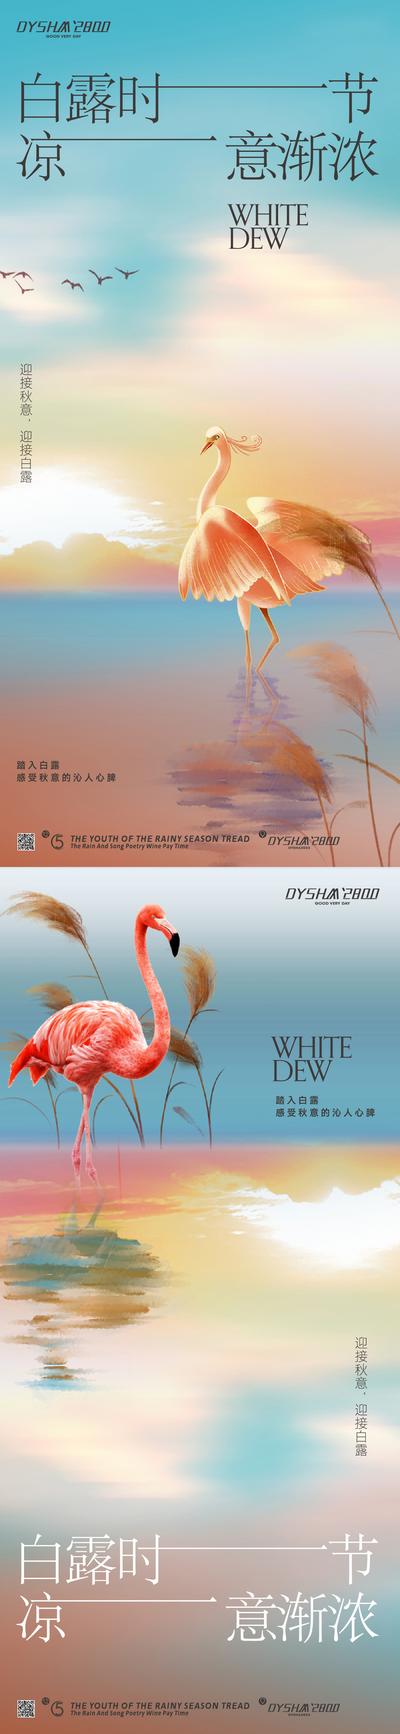 南门网 广告 海报 节气 白露 白鹭 唯美 小清新 仙鹤 插画 系列